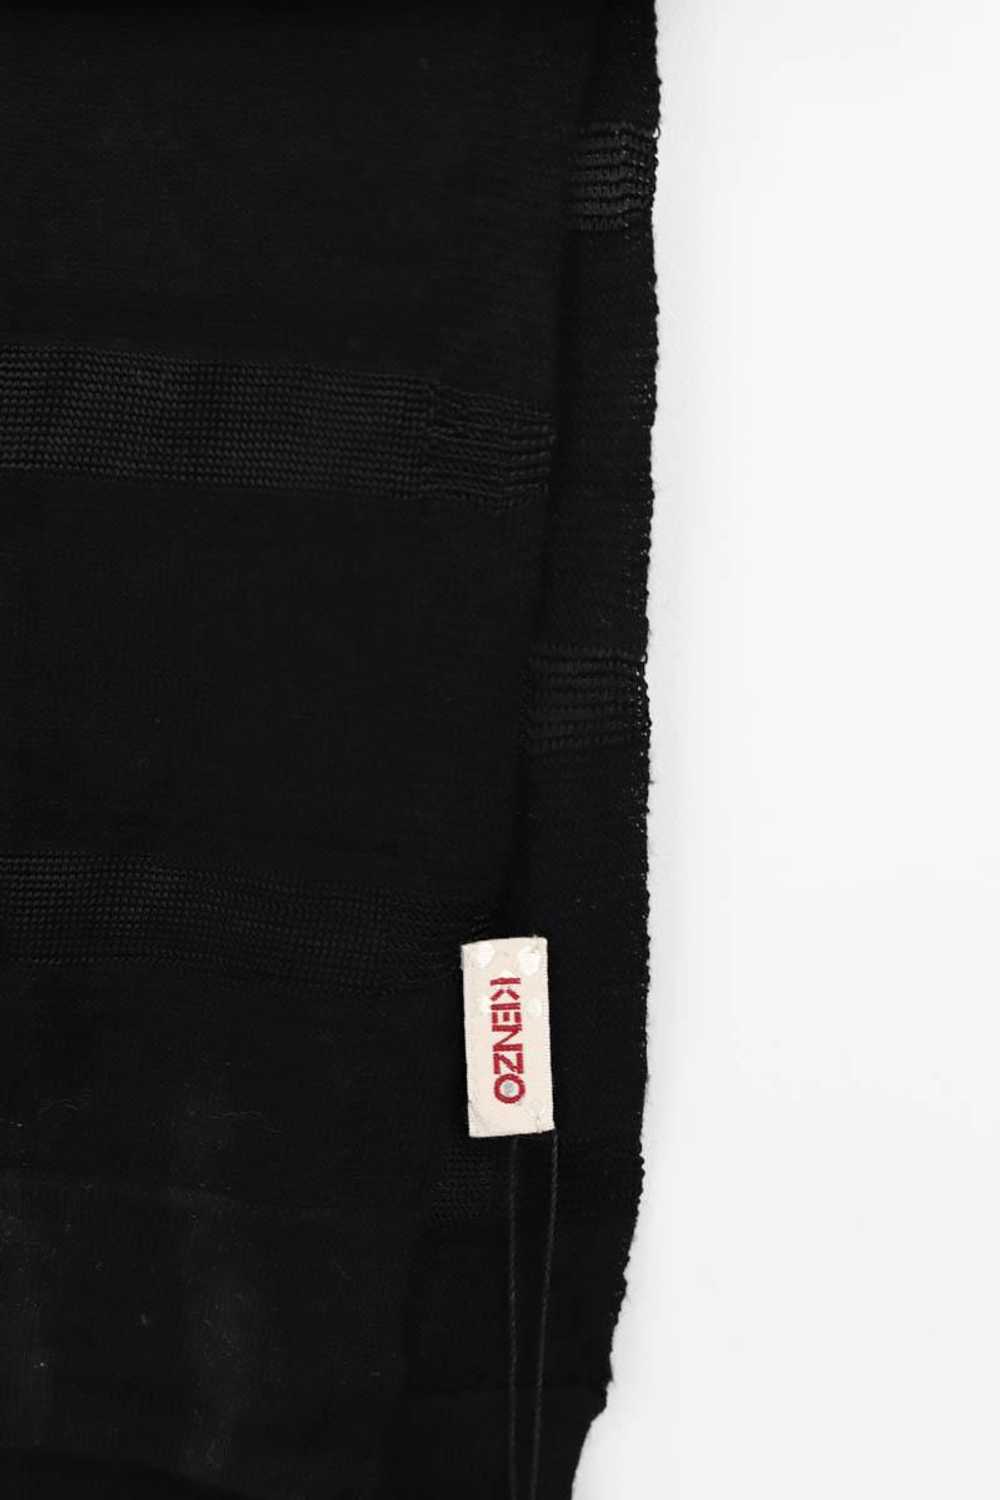 Circular Clothing Étole en laine Kenzo noir. - image 3